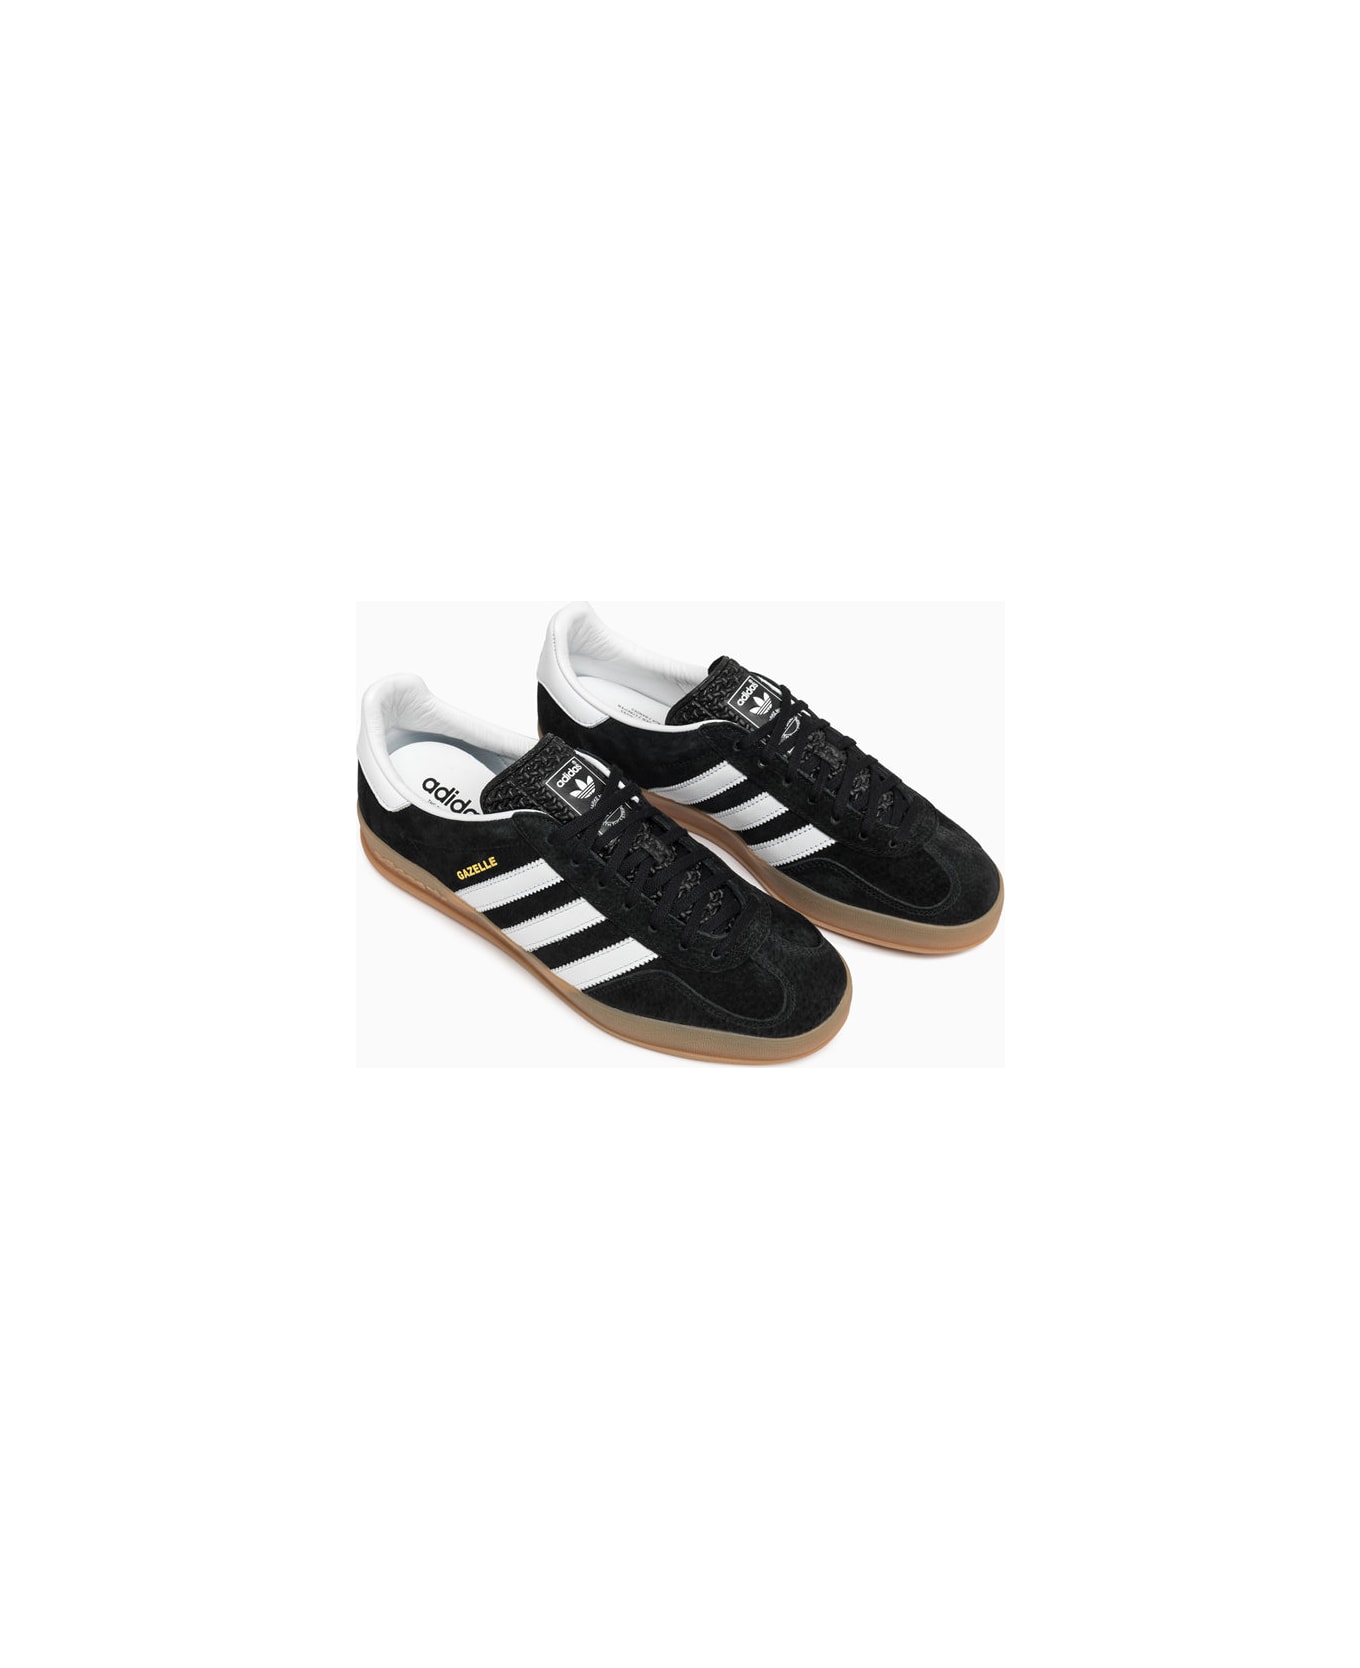 Adidas Originals Gazelle Indoor Sneakers H06259 - Cblack/ftwwht/cblack